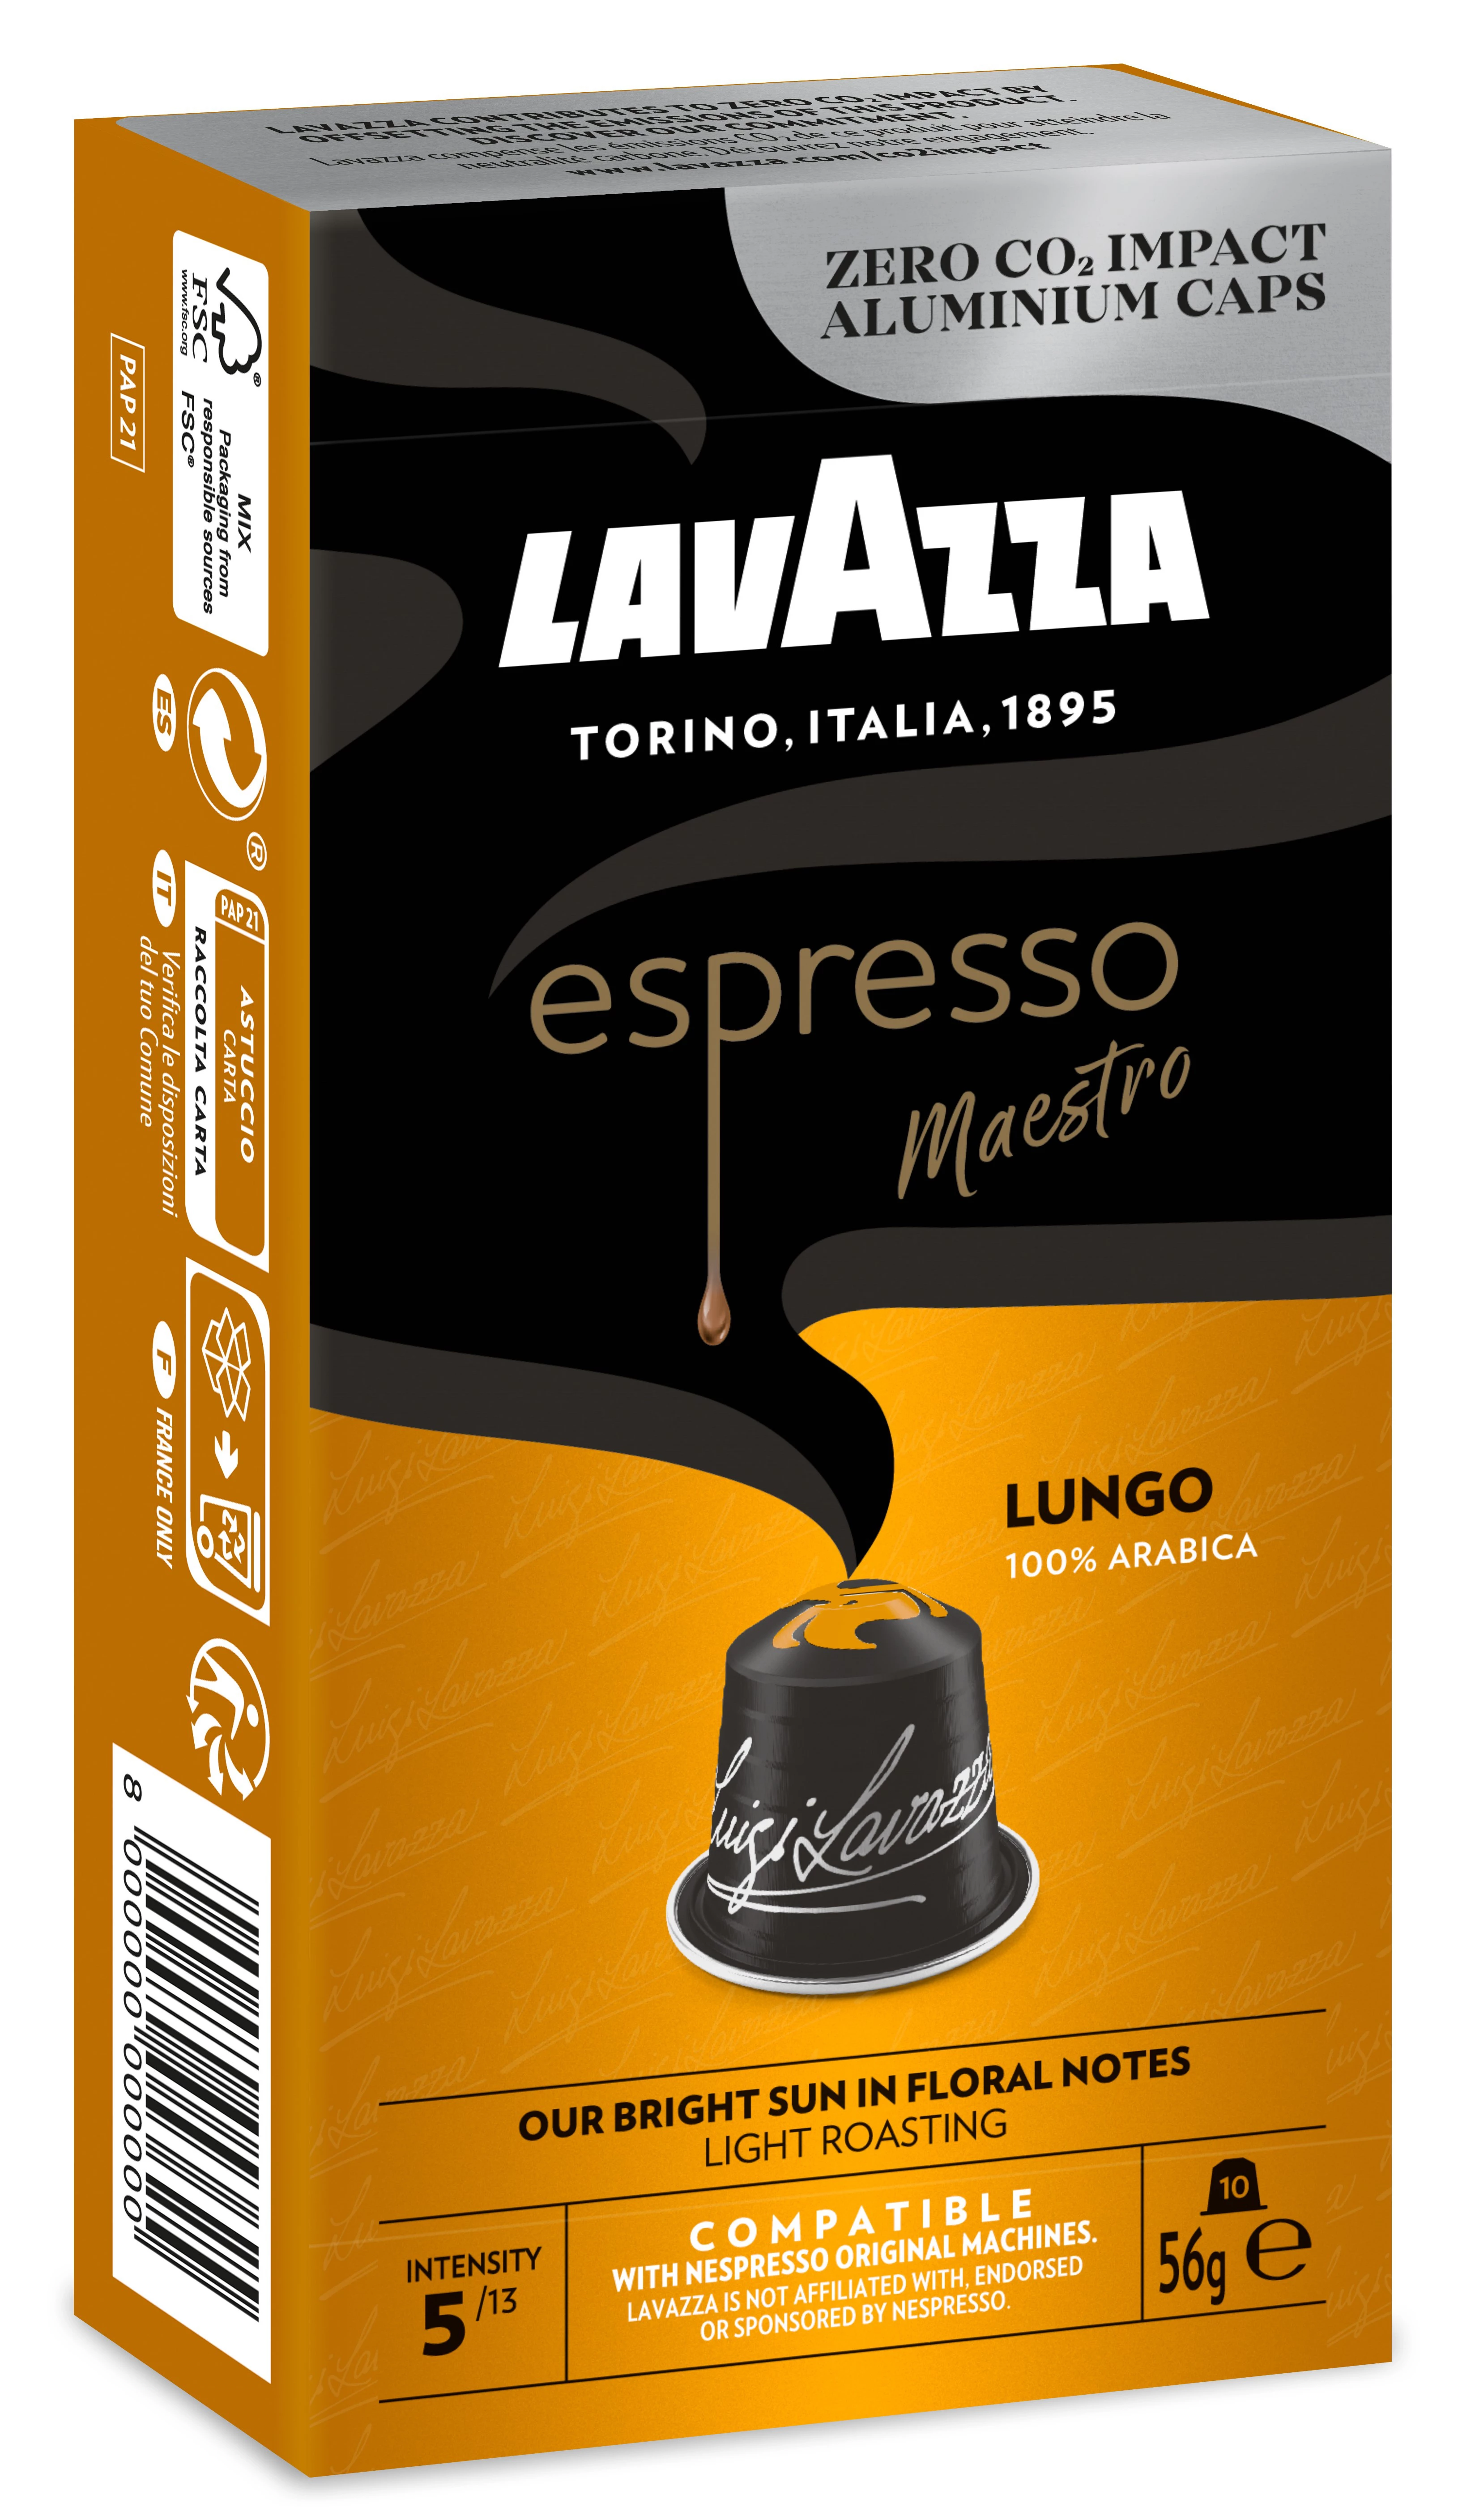 Capsule Café Espresso Maestro Lungo Compatibili Nespresso; x10; 56 g - LAVAZZA